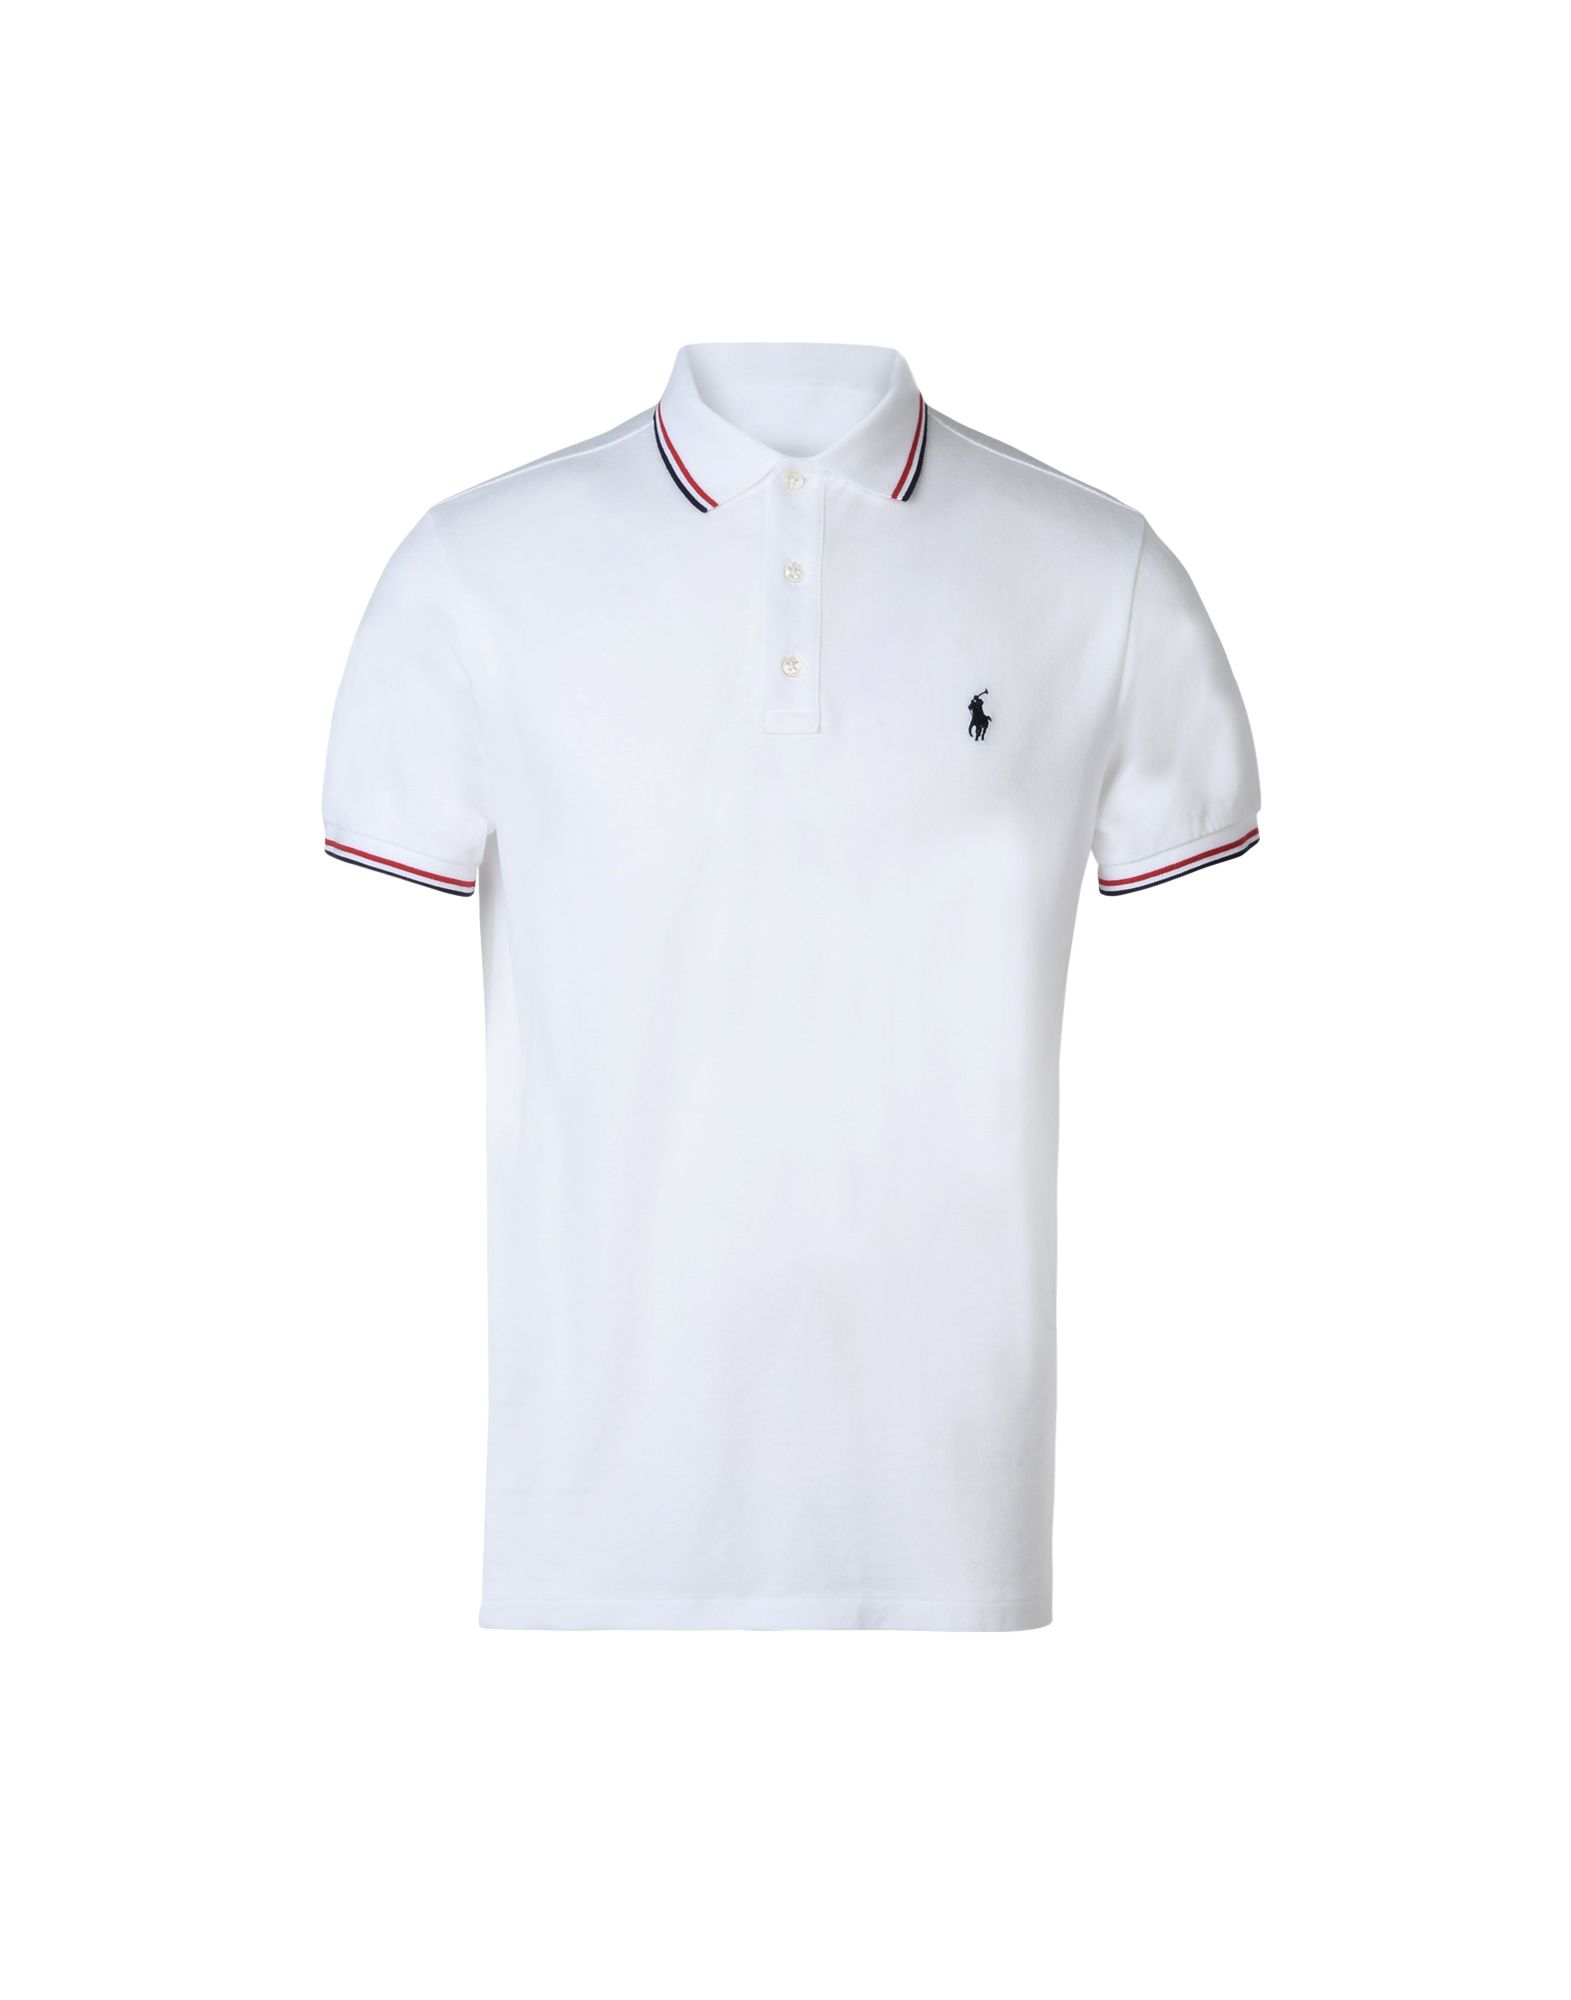 《送料無料》POLO RALPH LAUREN メンズ ポロシャツ ホワイト S コットン 100% Custom fit polo shirt